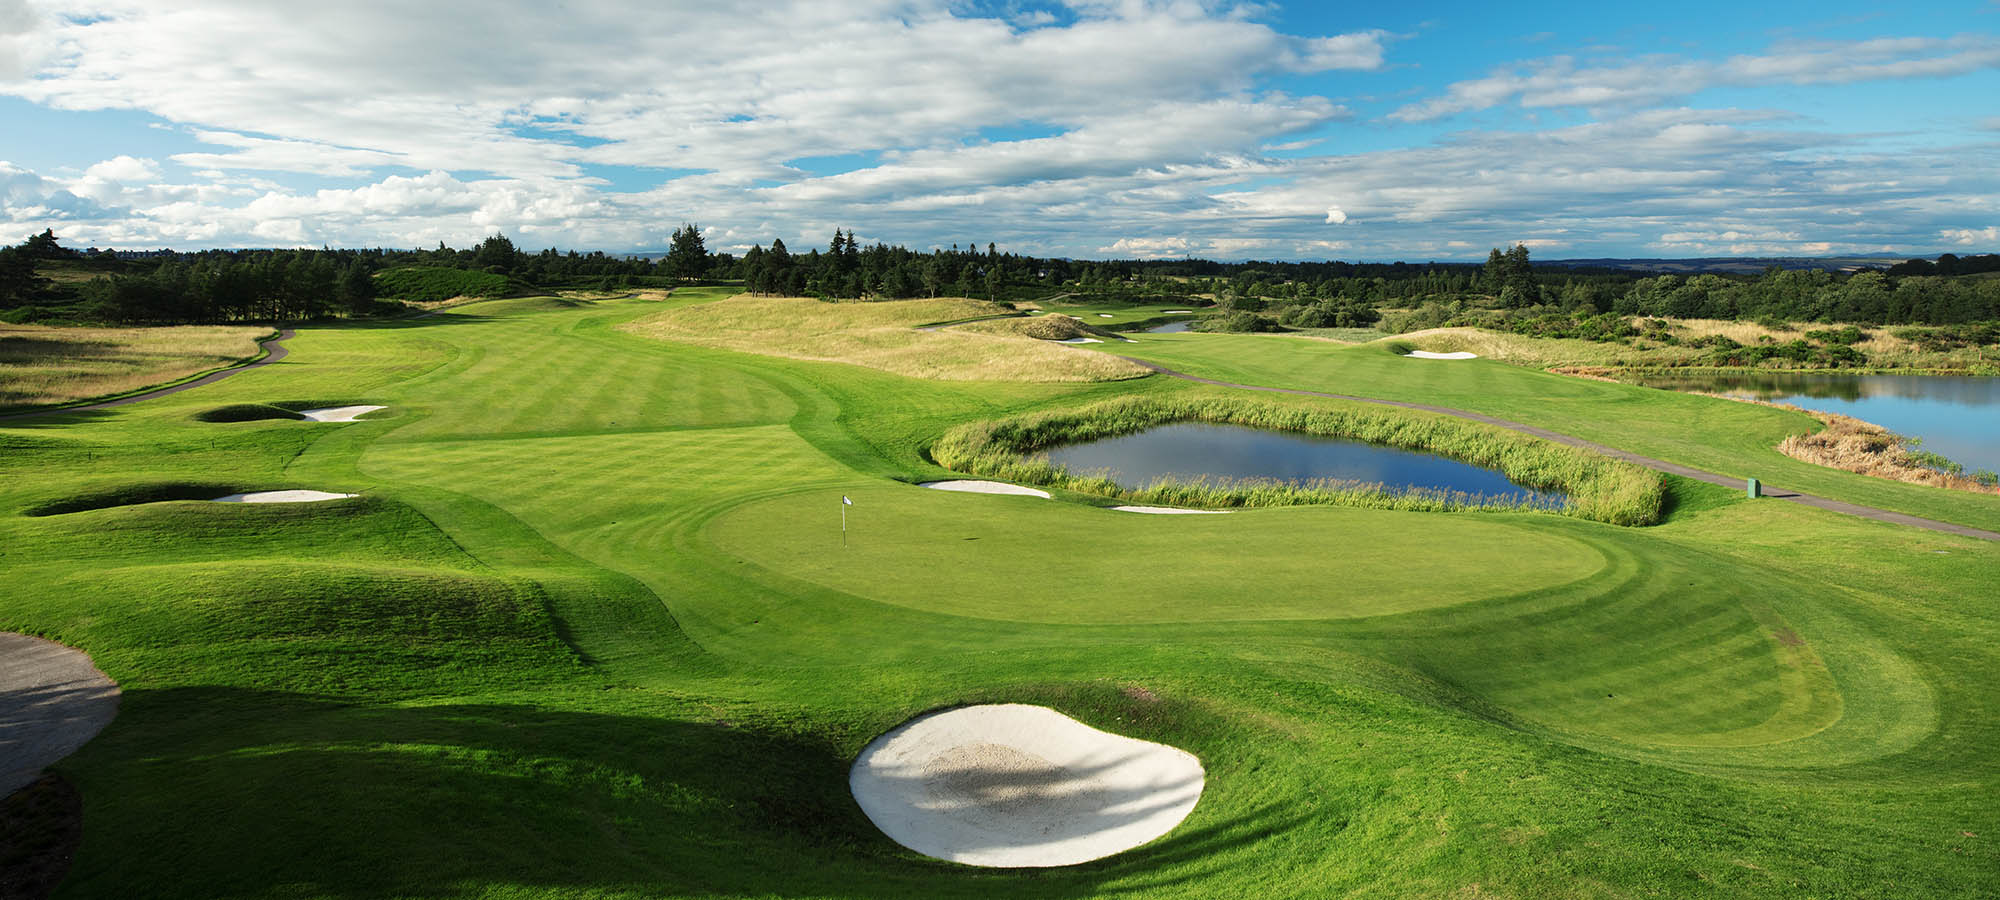 The PGA Centenary Golf Course Ryder Cup Course Gleneagles